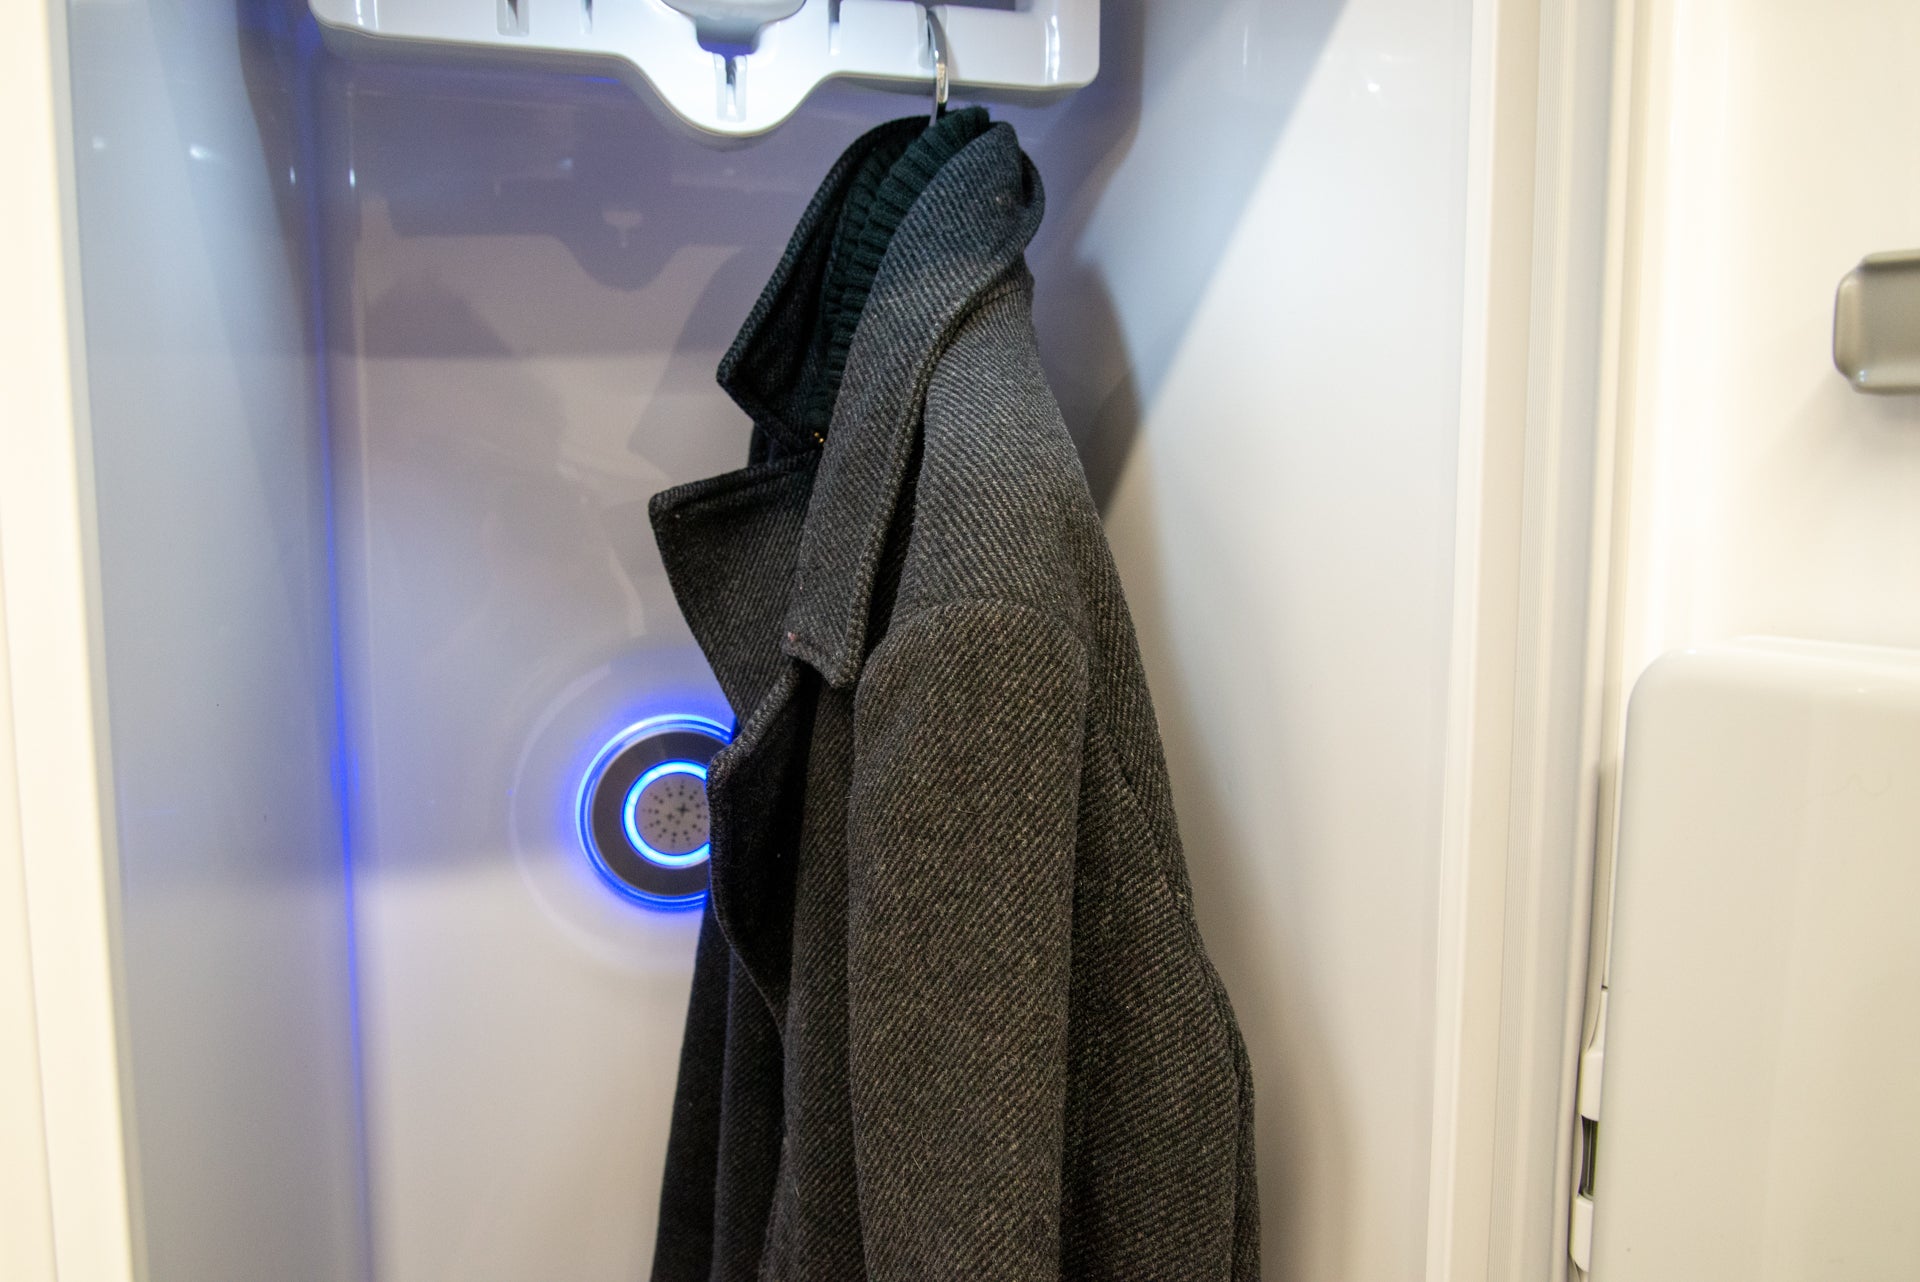 A black coat hanging inside LG styler